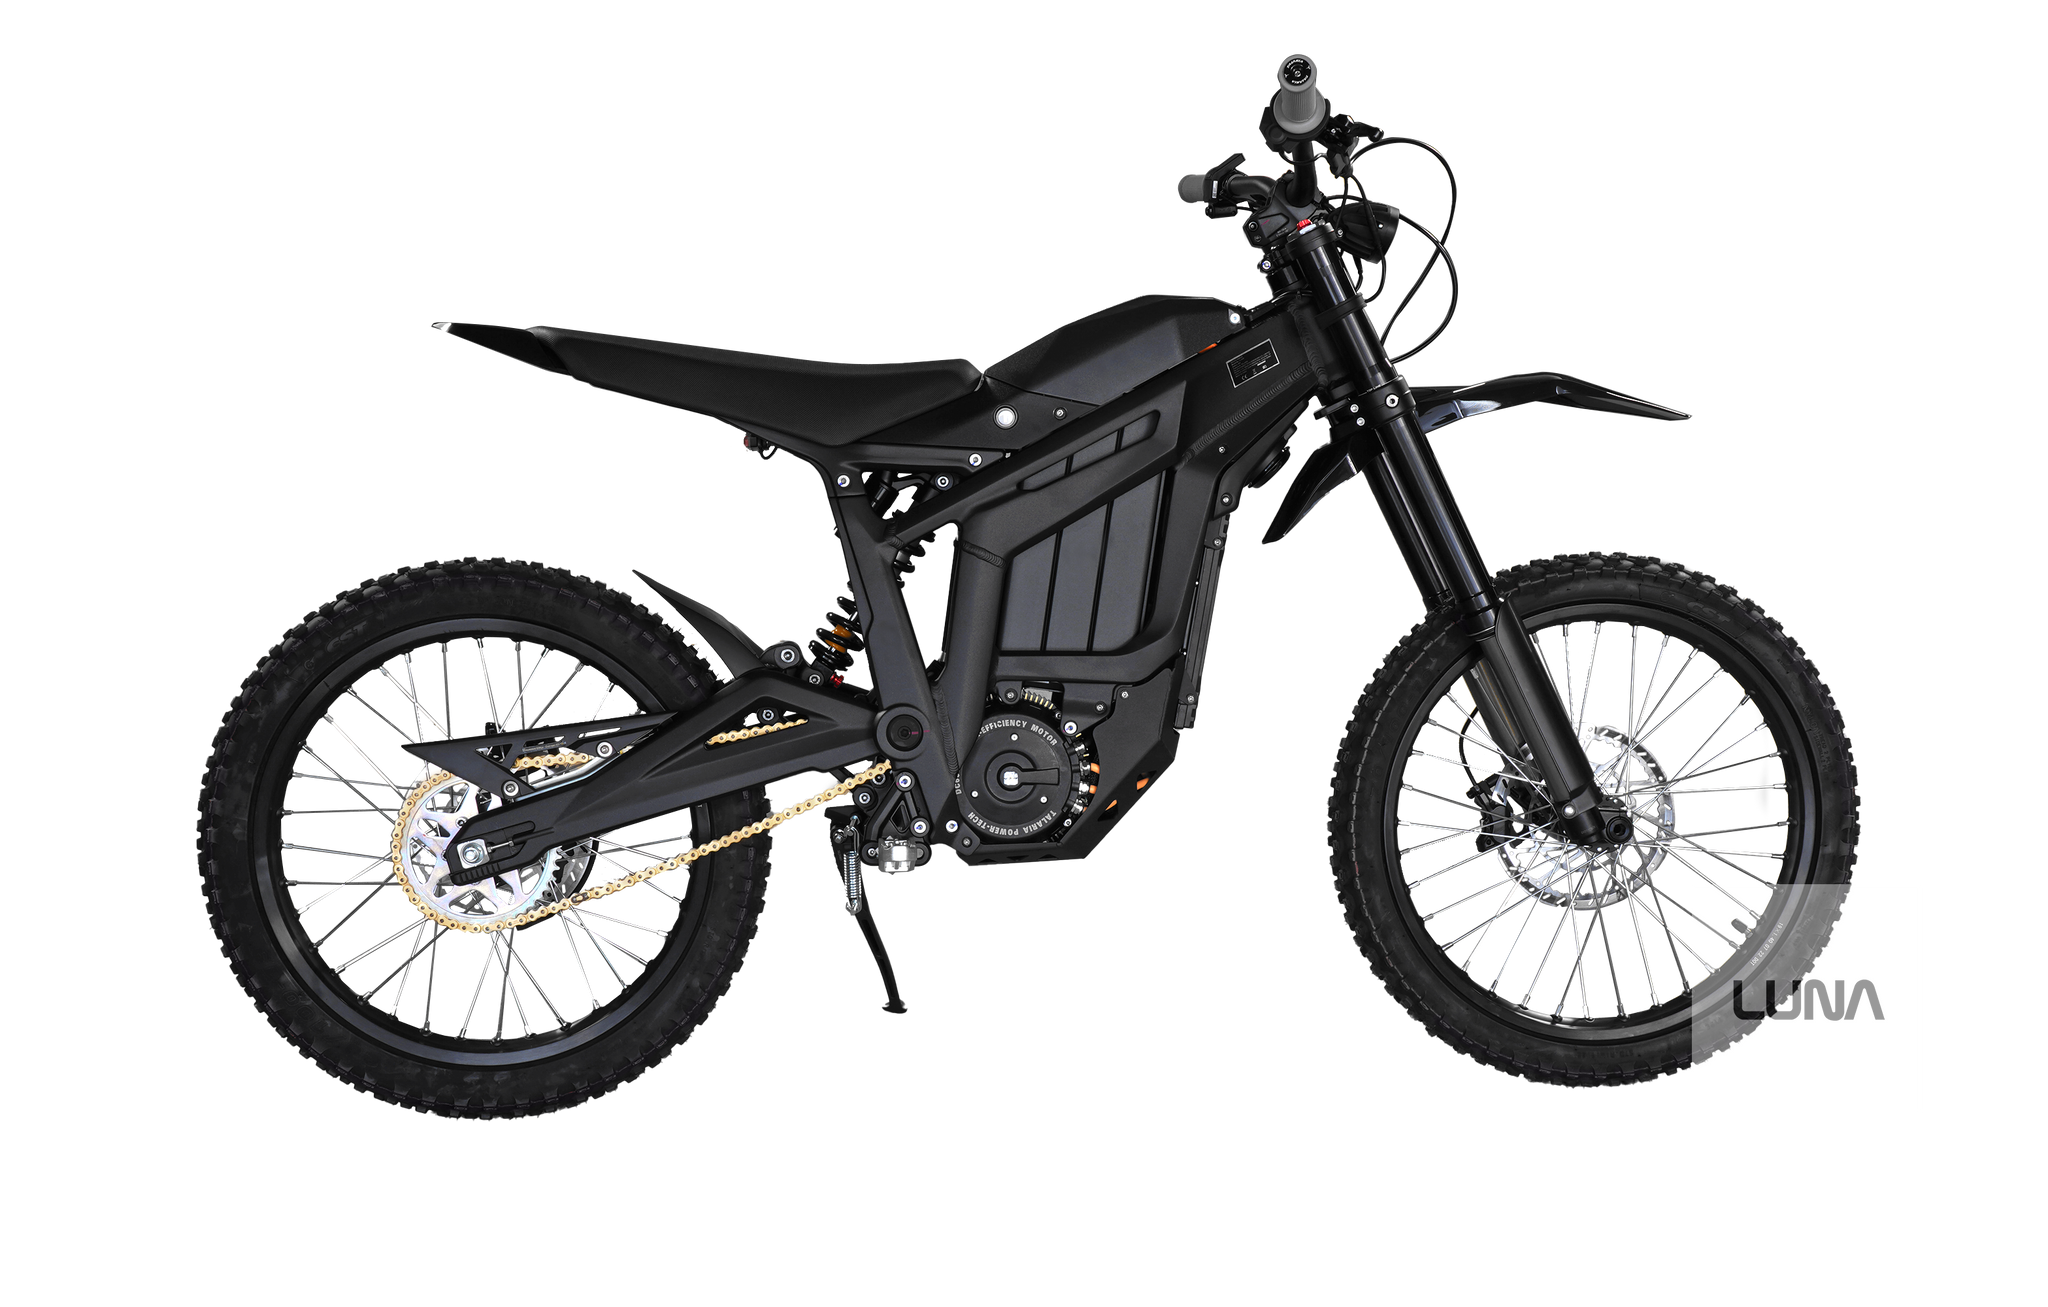 Talaria Sting R MX4 E-Dirt Bike - Black — BIKEFACTORY HAWAII